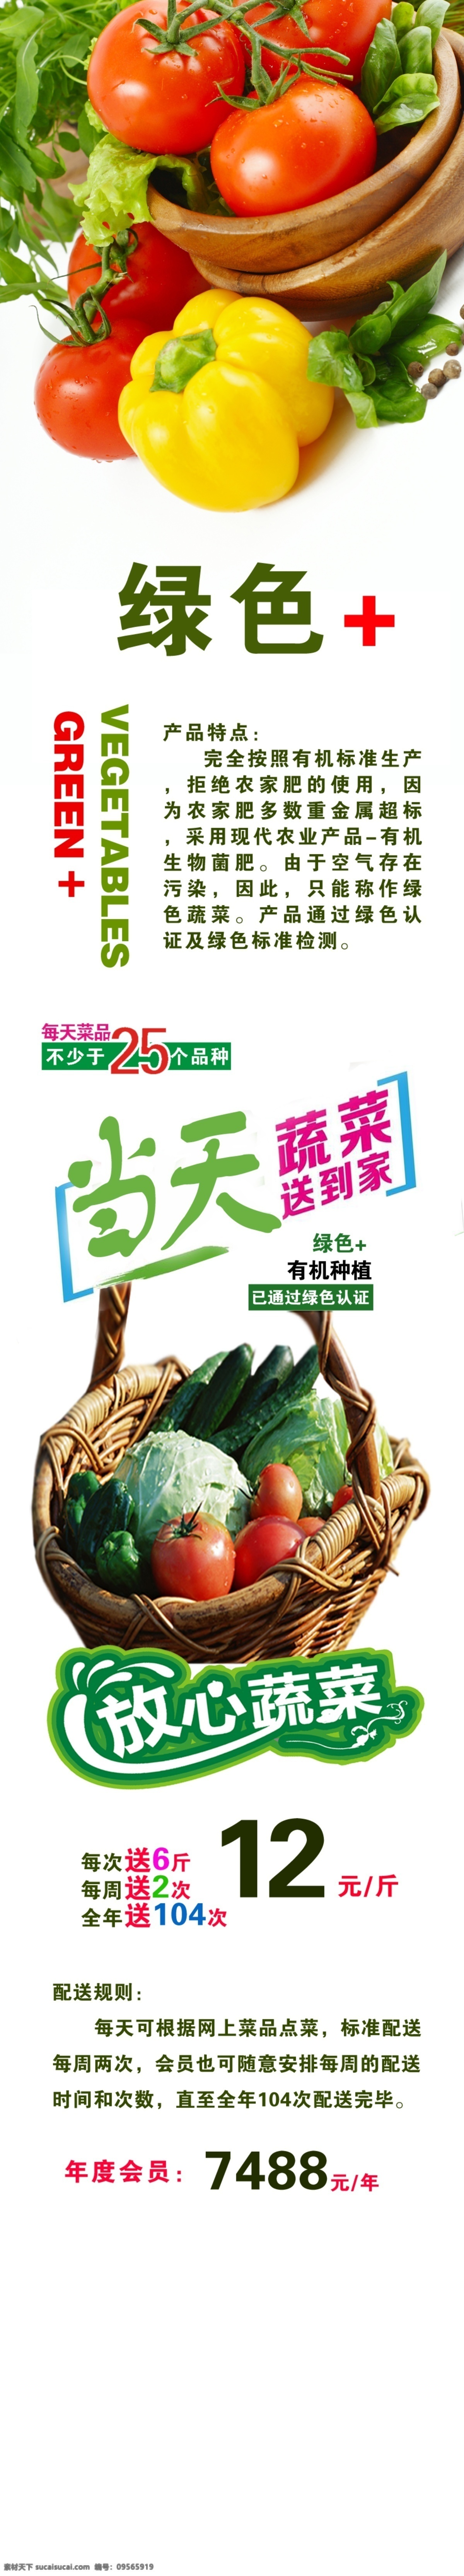 有机 绿色 蔬菜 配送 公众 号 详情 页 有机蔬菜配送 蔬菜配送海报 竖版质量认证 菜品 菜蓝子